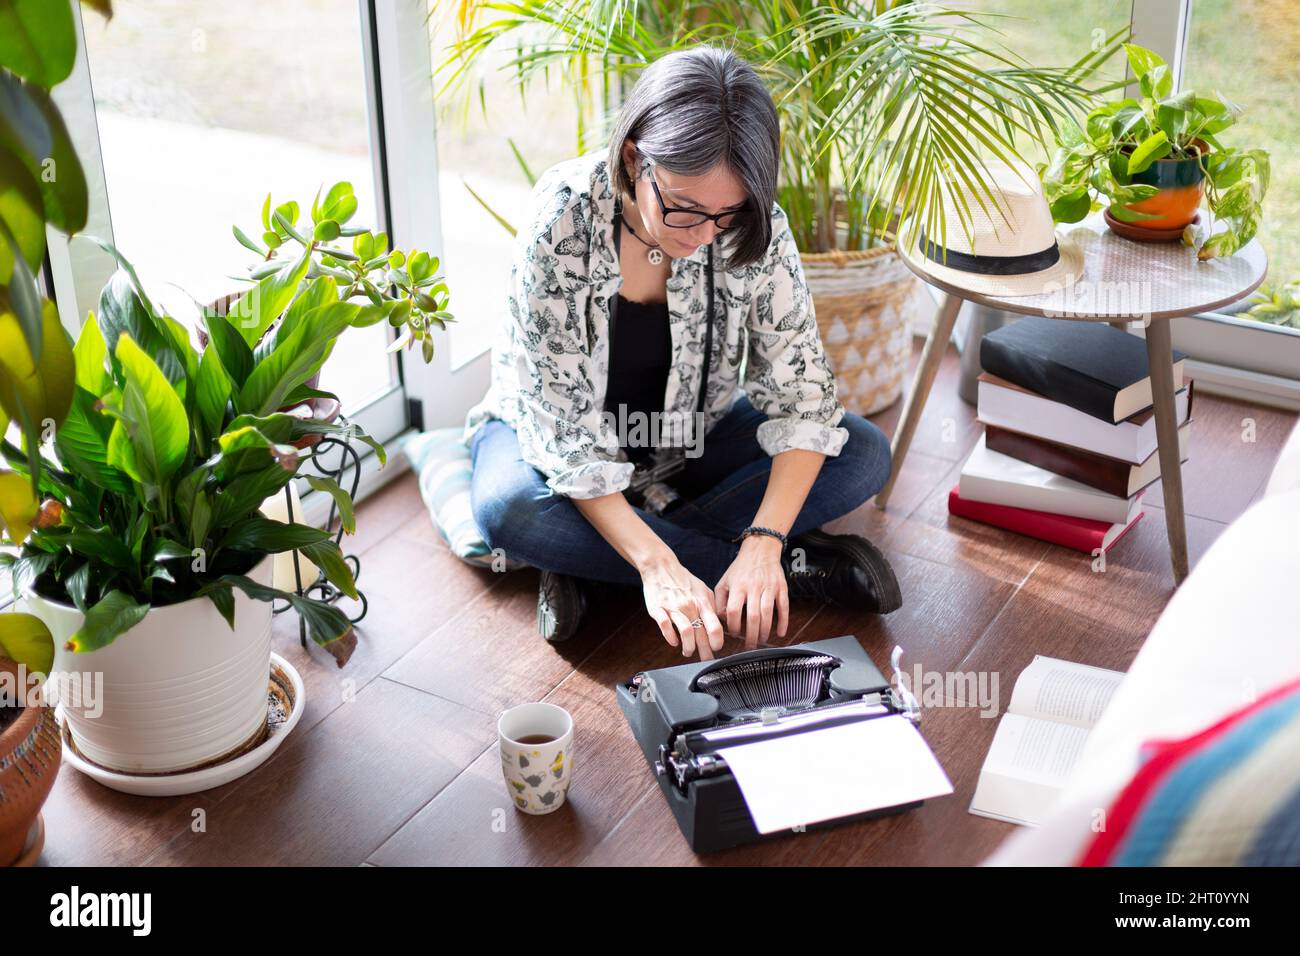 Vue de dessus d'une femme adulte dactylographiant sur une machine à écrire. Concept « travail à domicile ». Banque D'Images